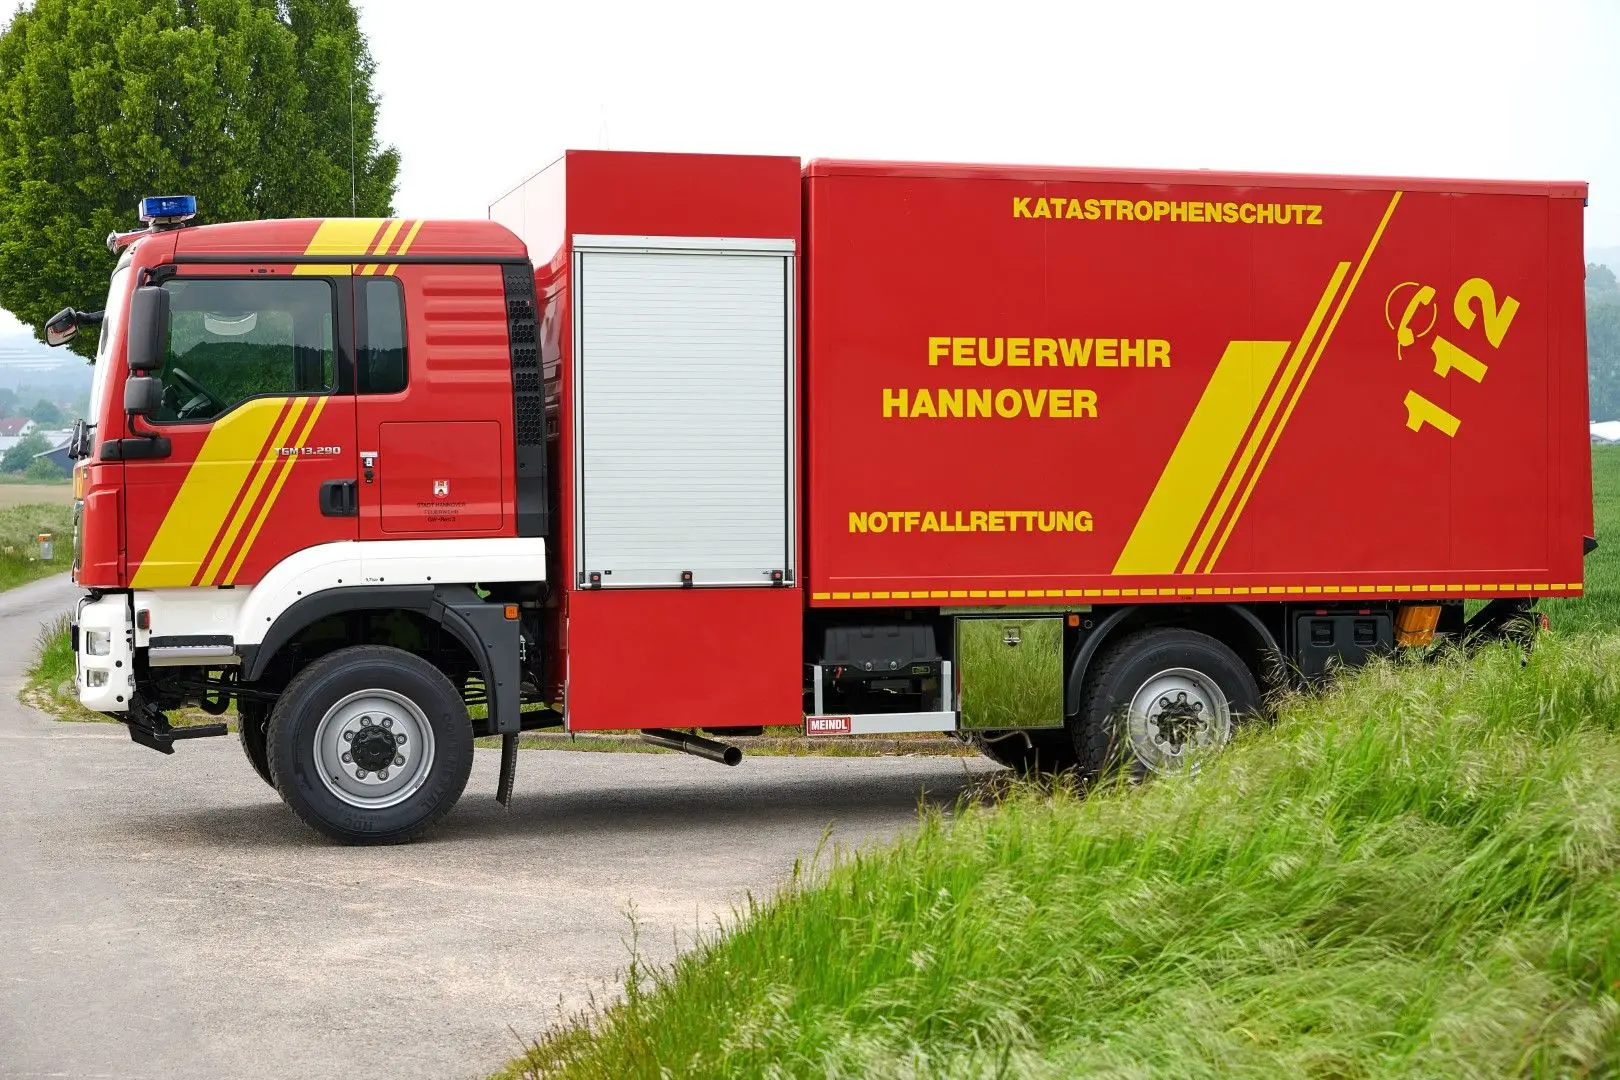 GW-L2 Gerätewagen Rettung Feuerwehr Hannover